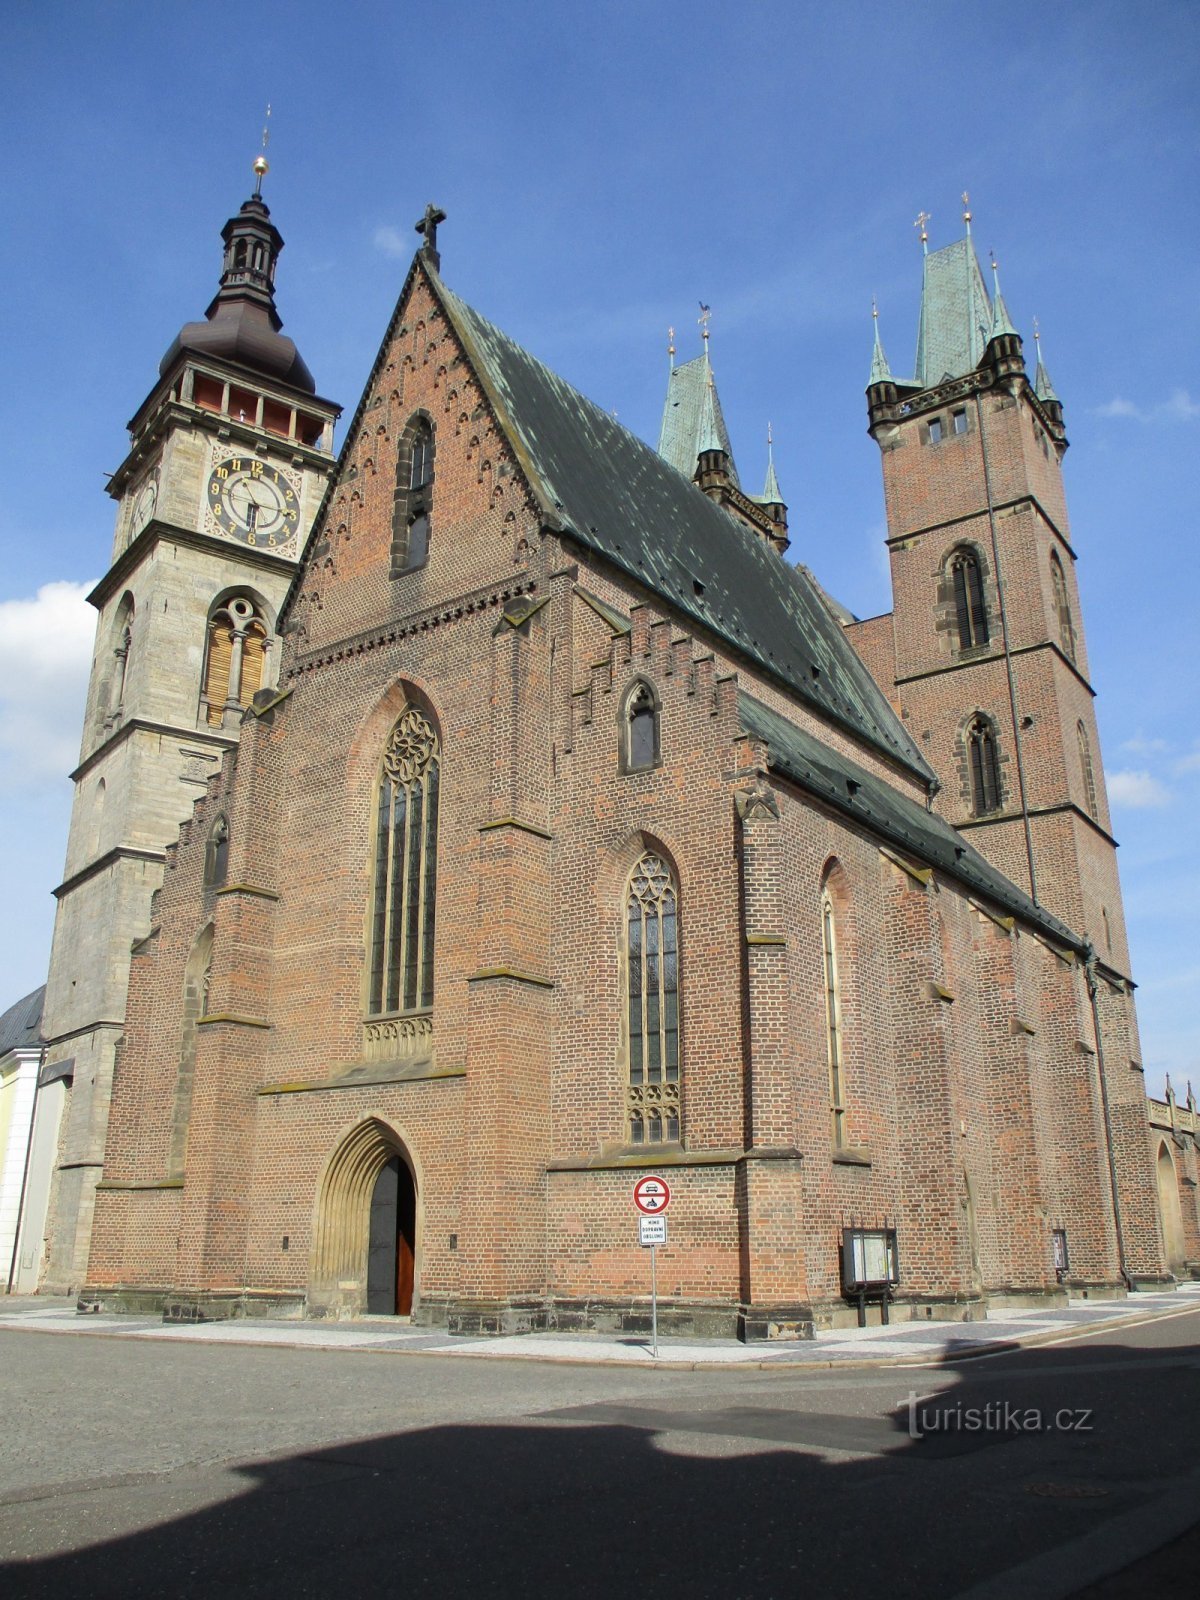 A Fehér torony és a Szent István-székesegyház. Spirit (Hradec Králové, 15.9.2019.)